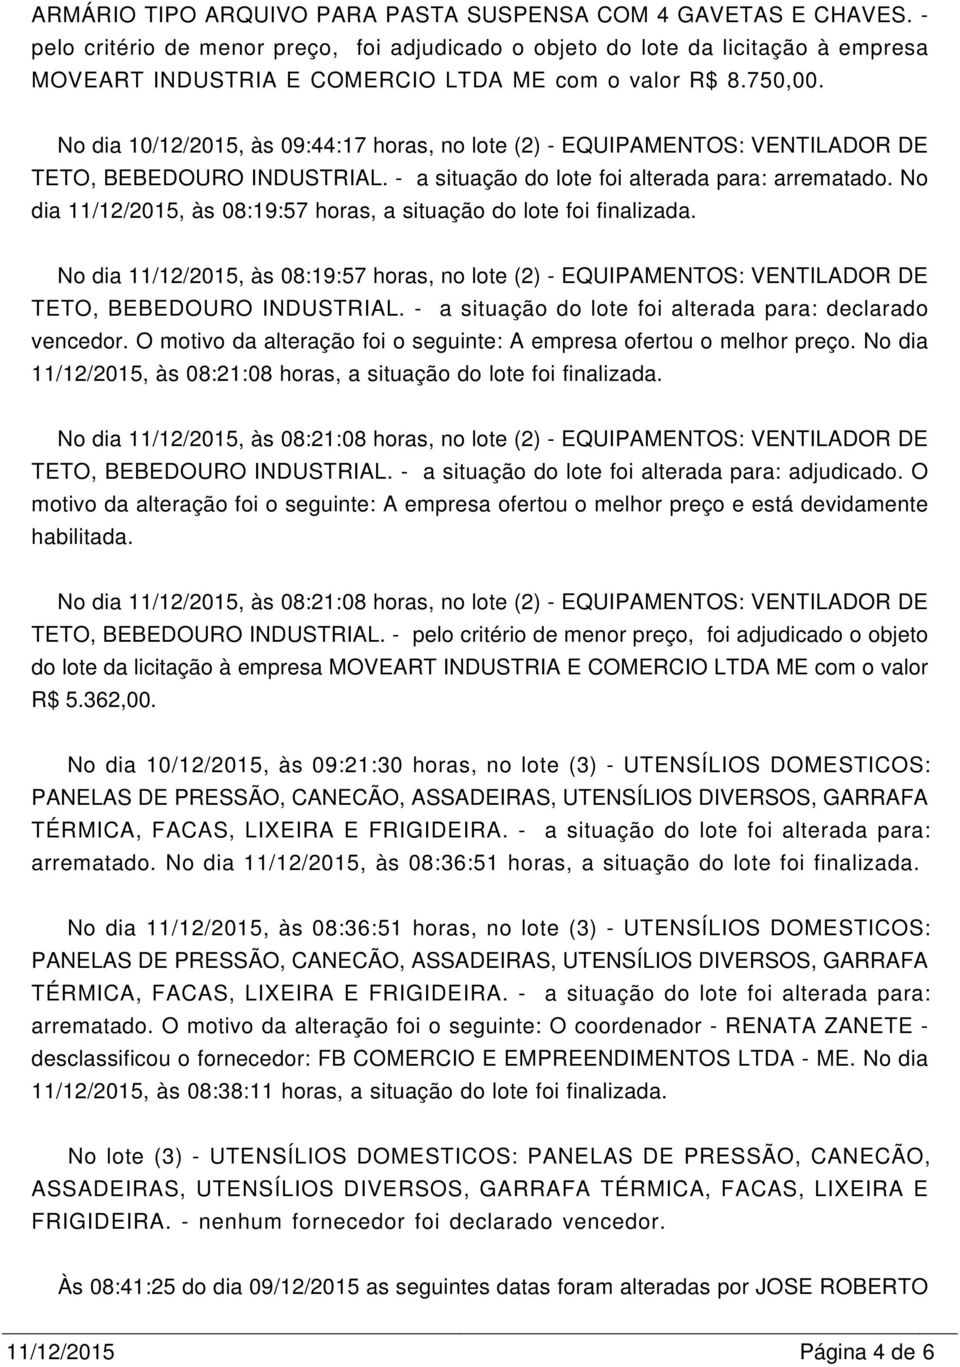 No dia 10/12/2015, às 09:44:17 horas, no lote (2) - EQUIPANTOS: VENTILADOR DE TETO, BEBEDOURO INDUSTRIAL. - a situação do lote foi alterada para: arrematado.